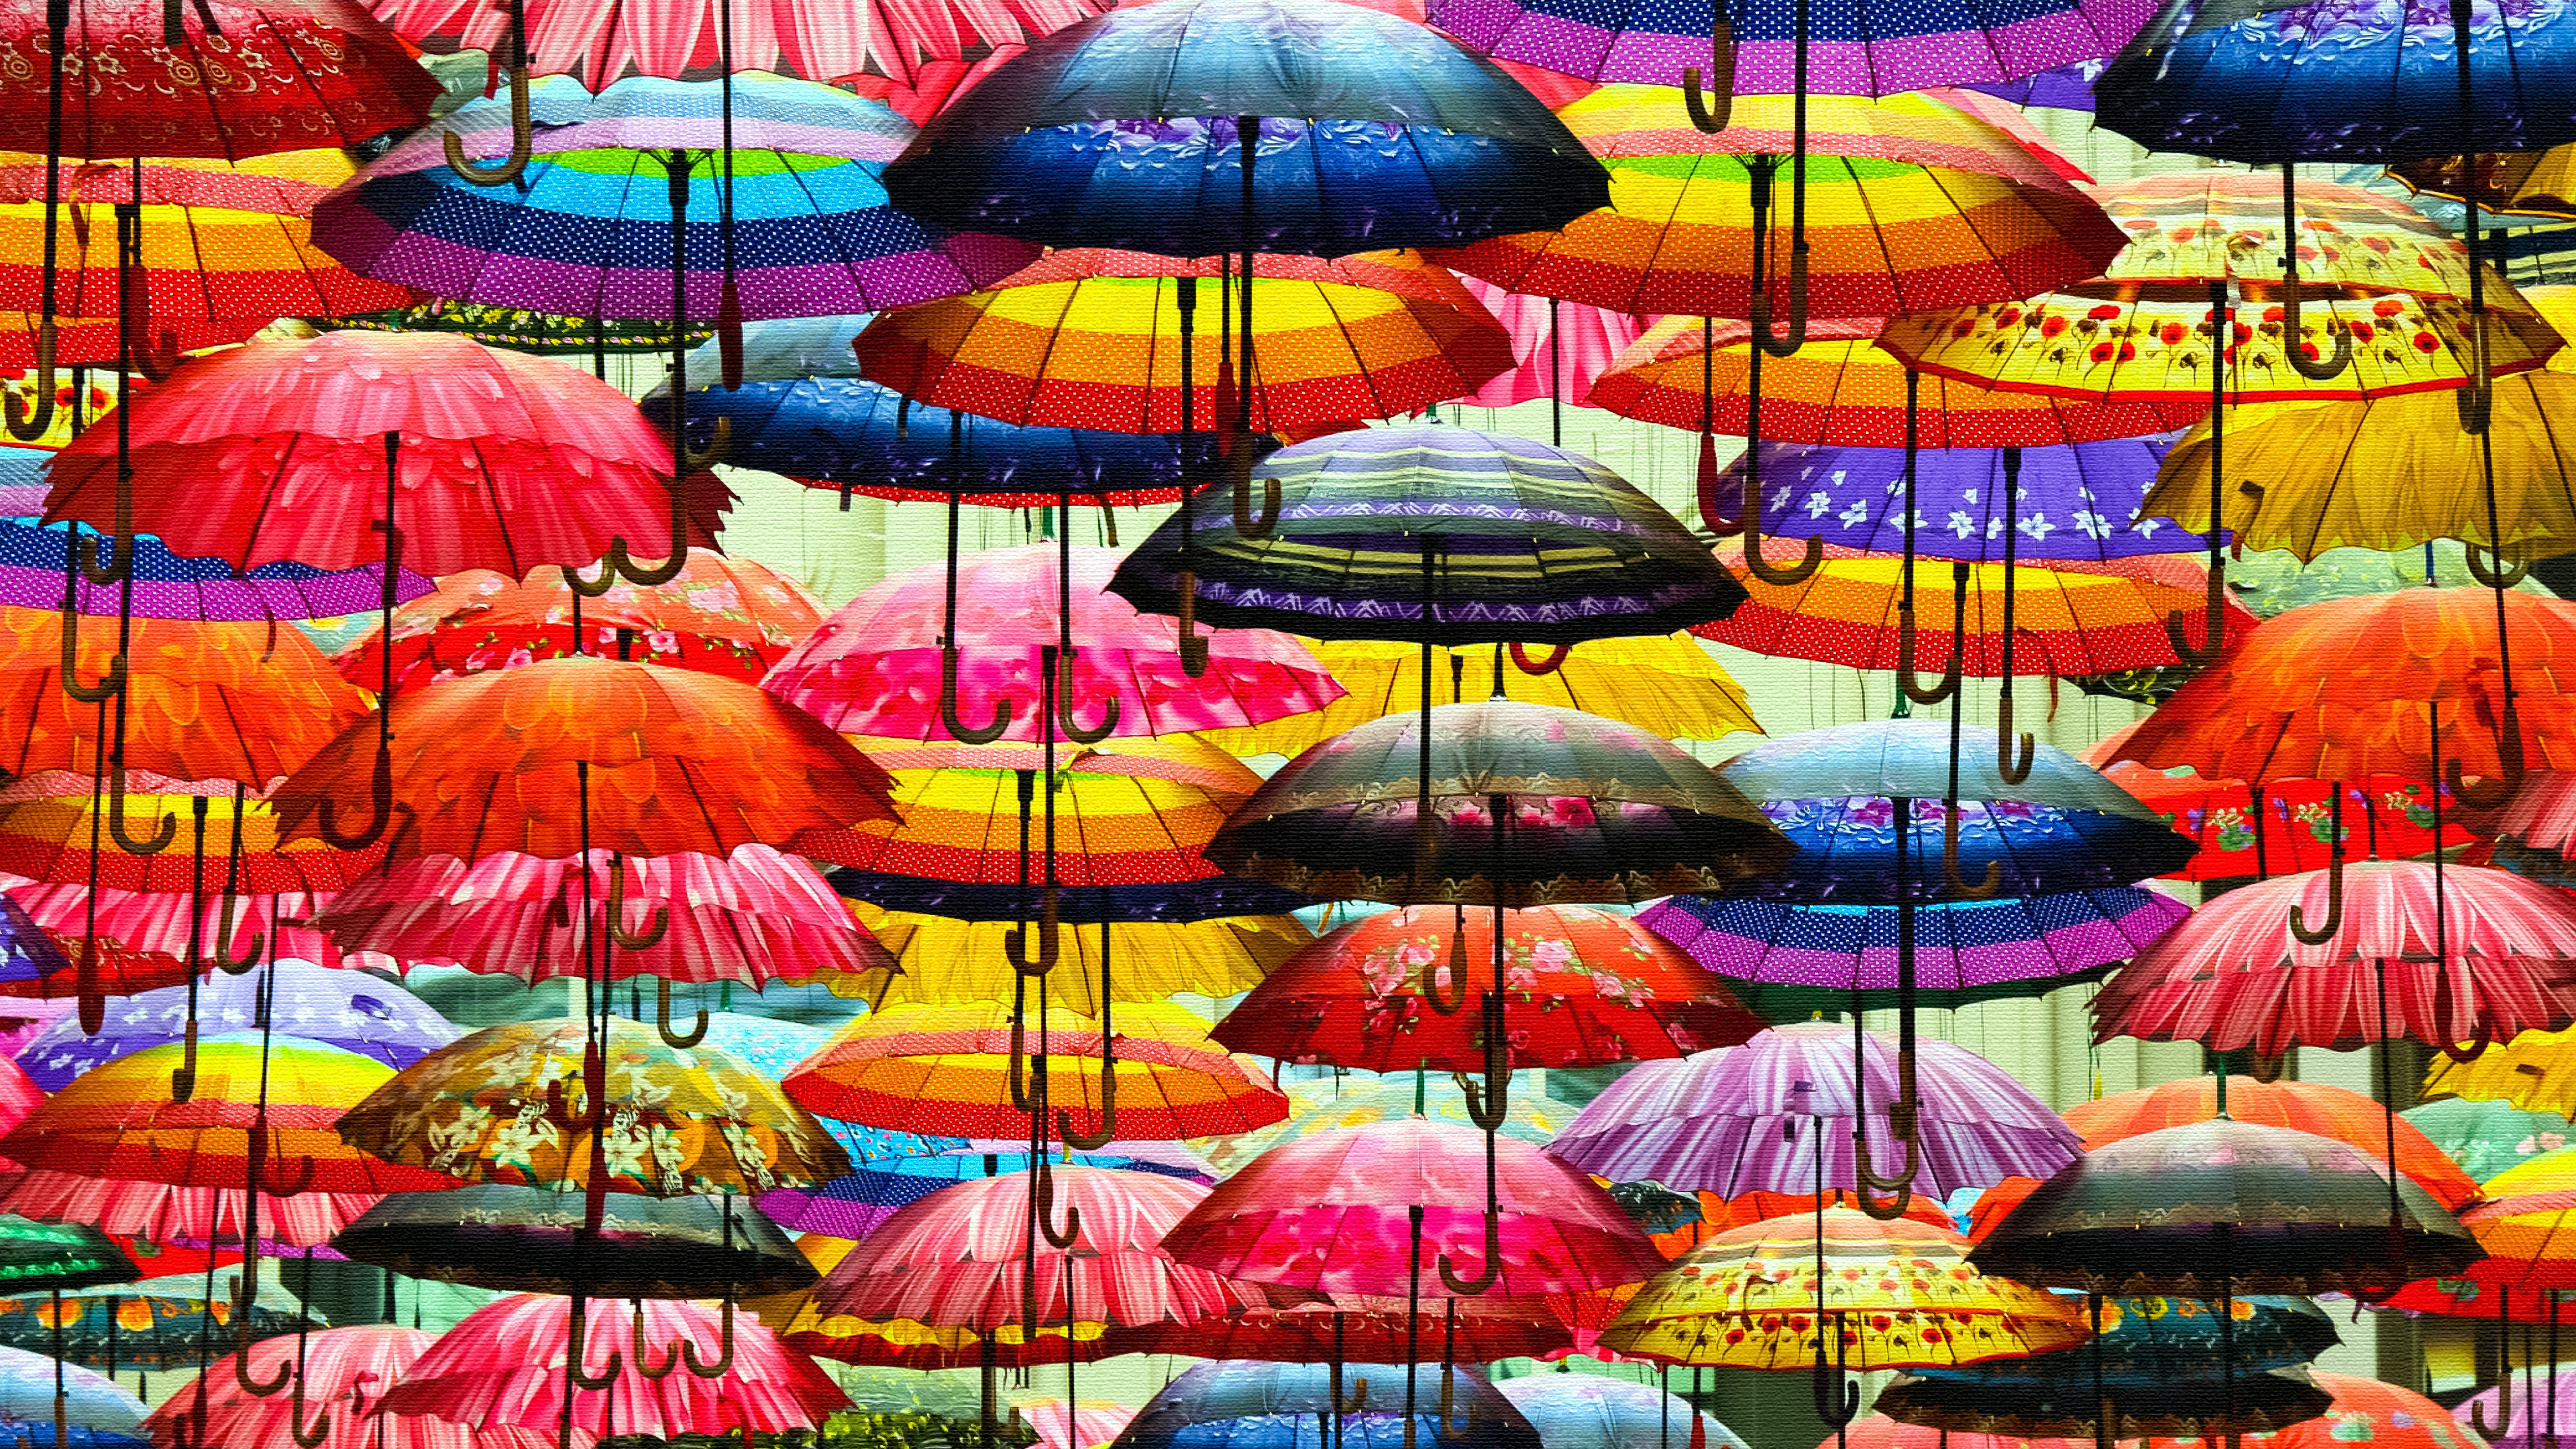 Umbrellas - Print on Canvas by Manufan63